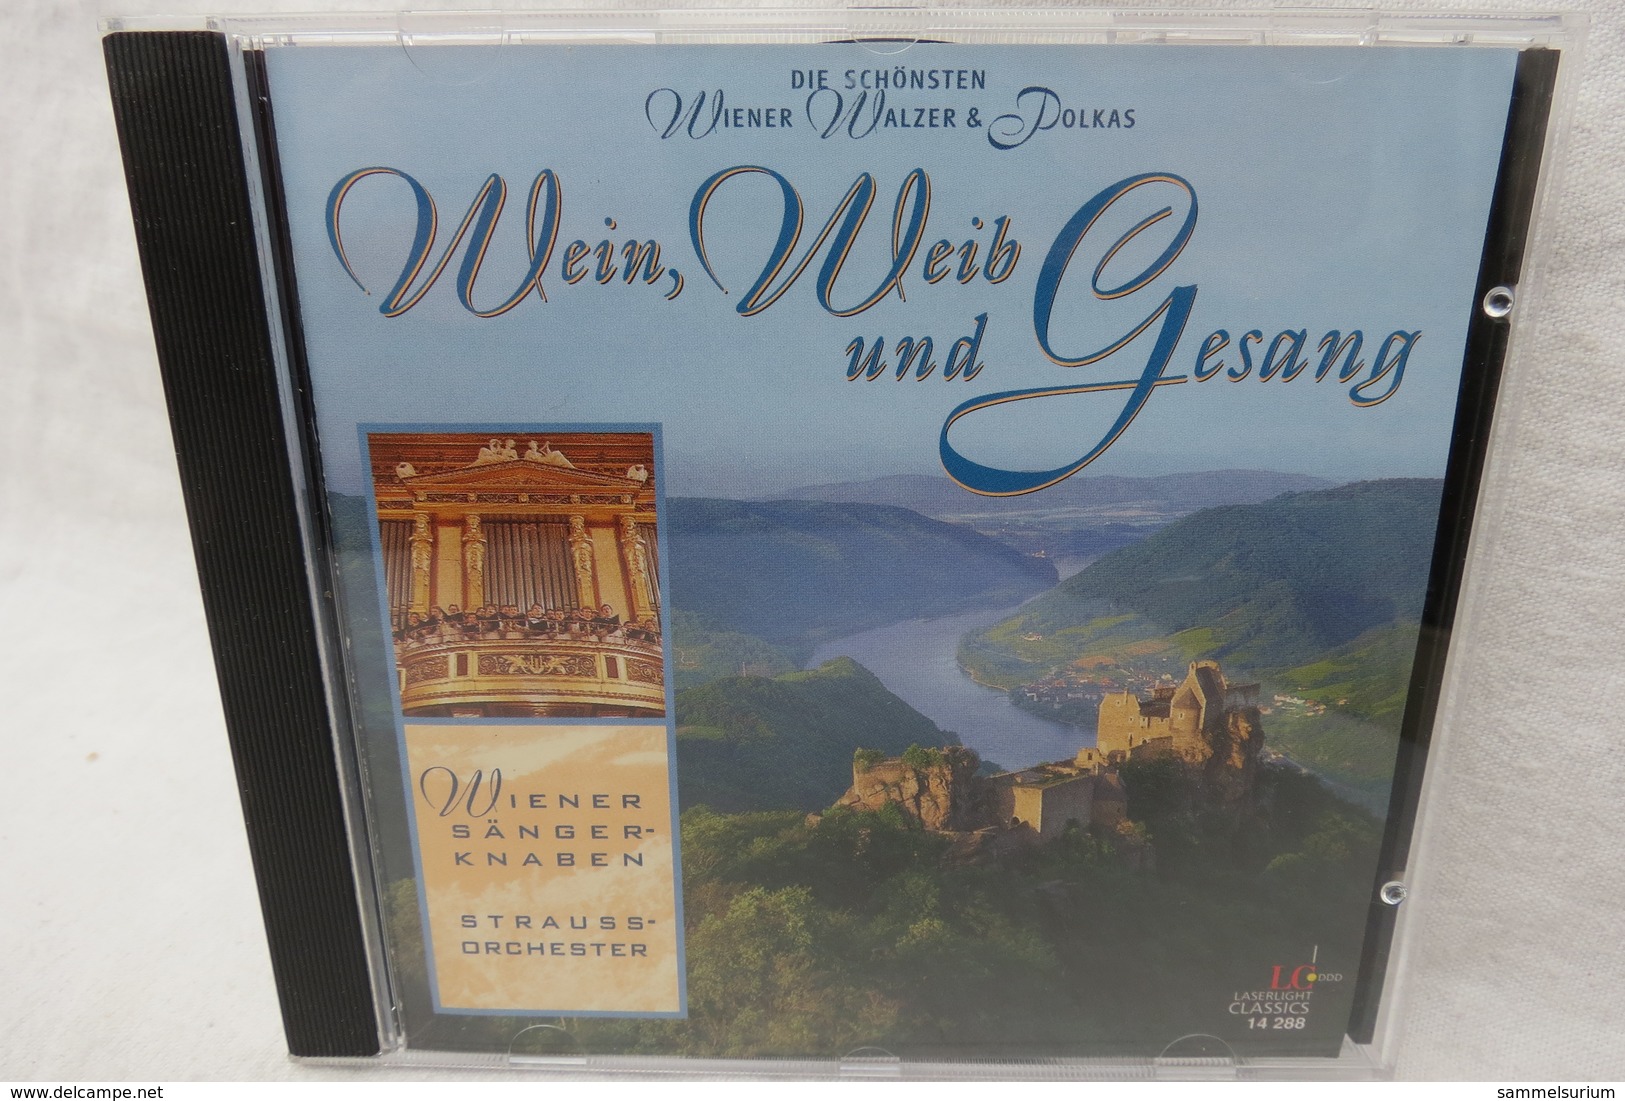 CD "Wiener Sängerknaben / Strauss-Orchester" Wein, Weib Und Gesang, Die Schönsten Wiener Walzer & Polkas - Other - German Music